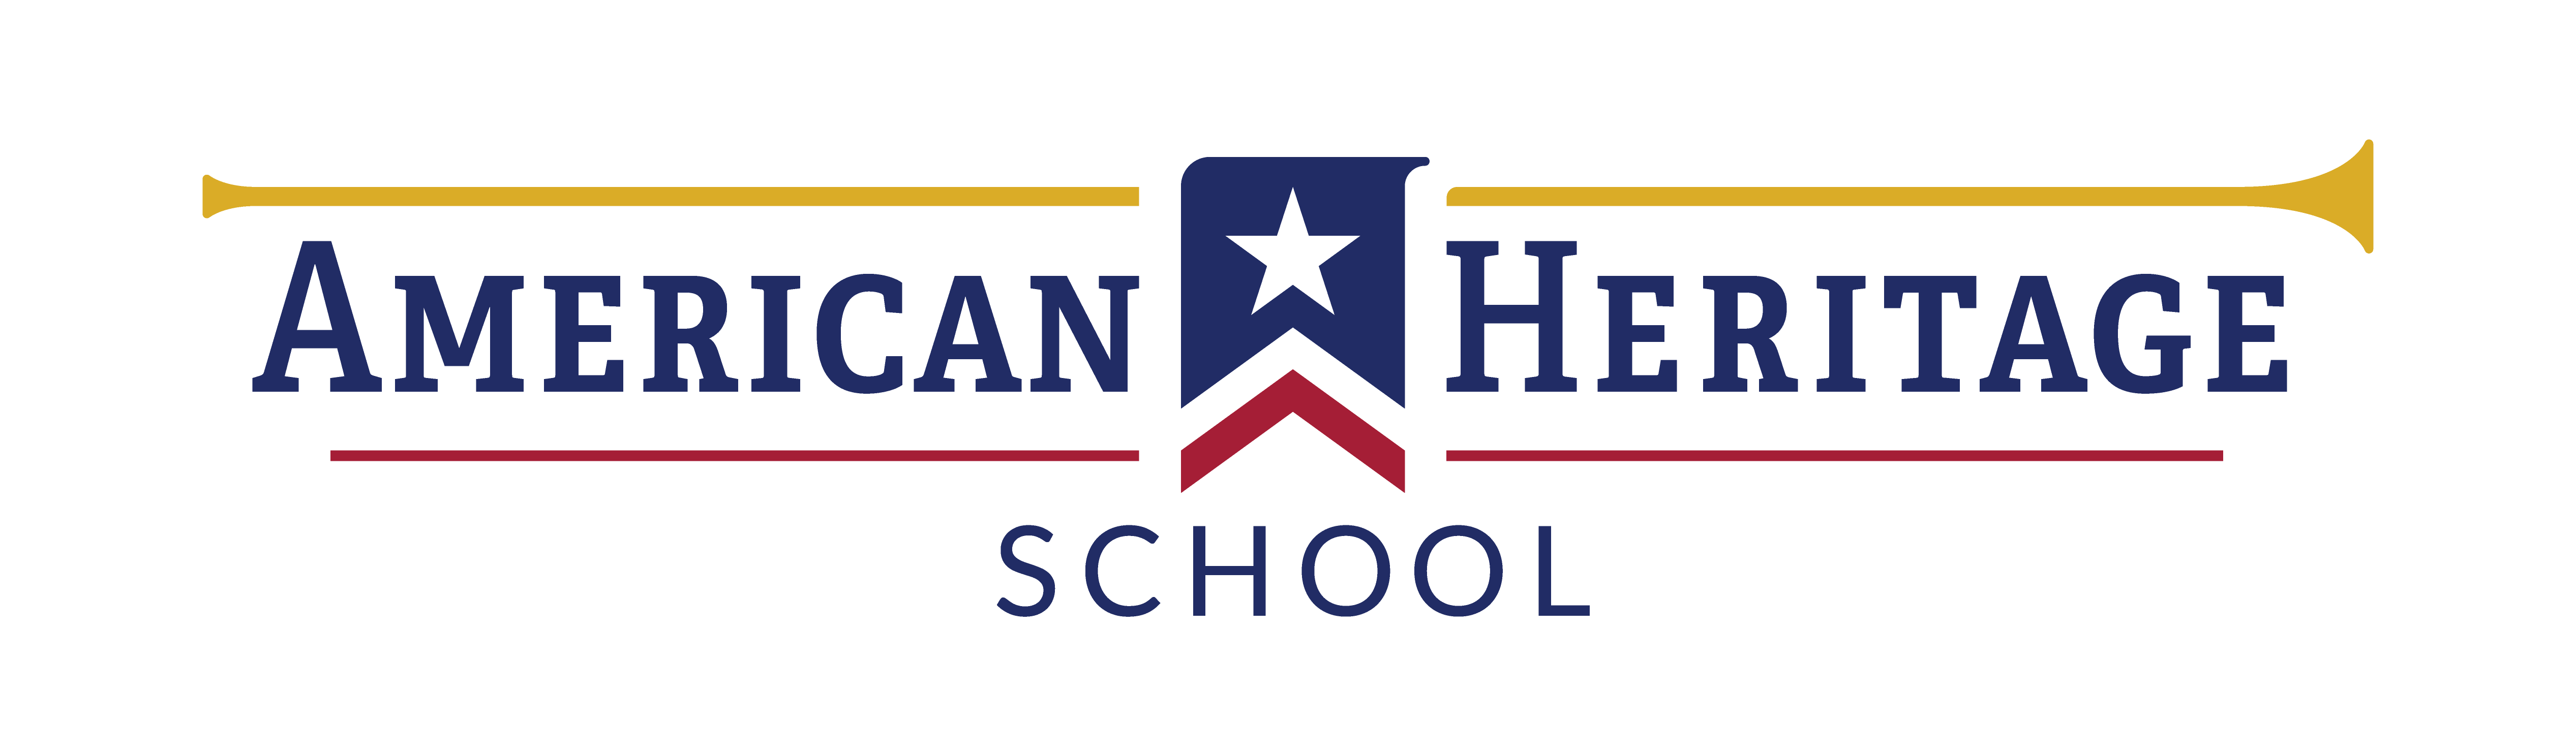 American Heritage School—Global